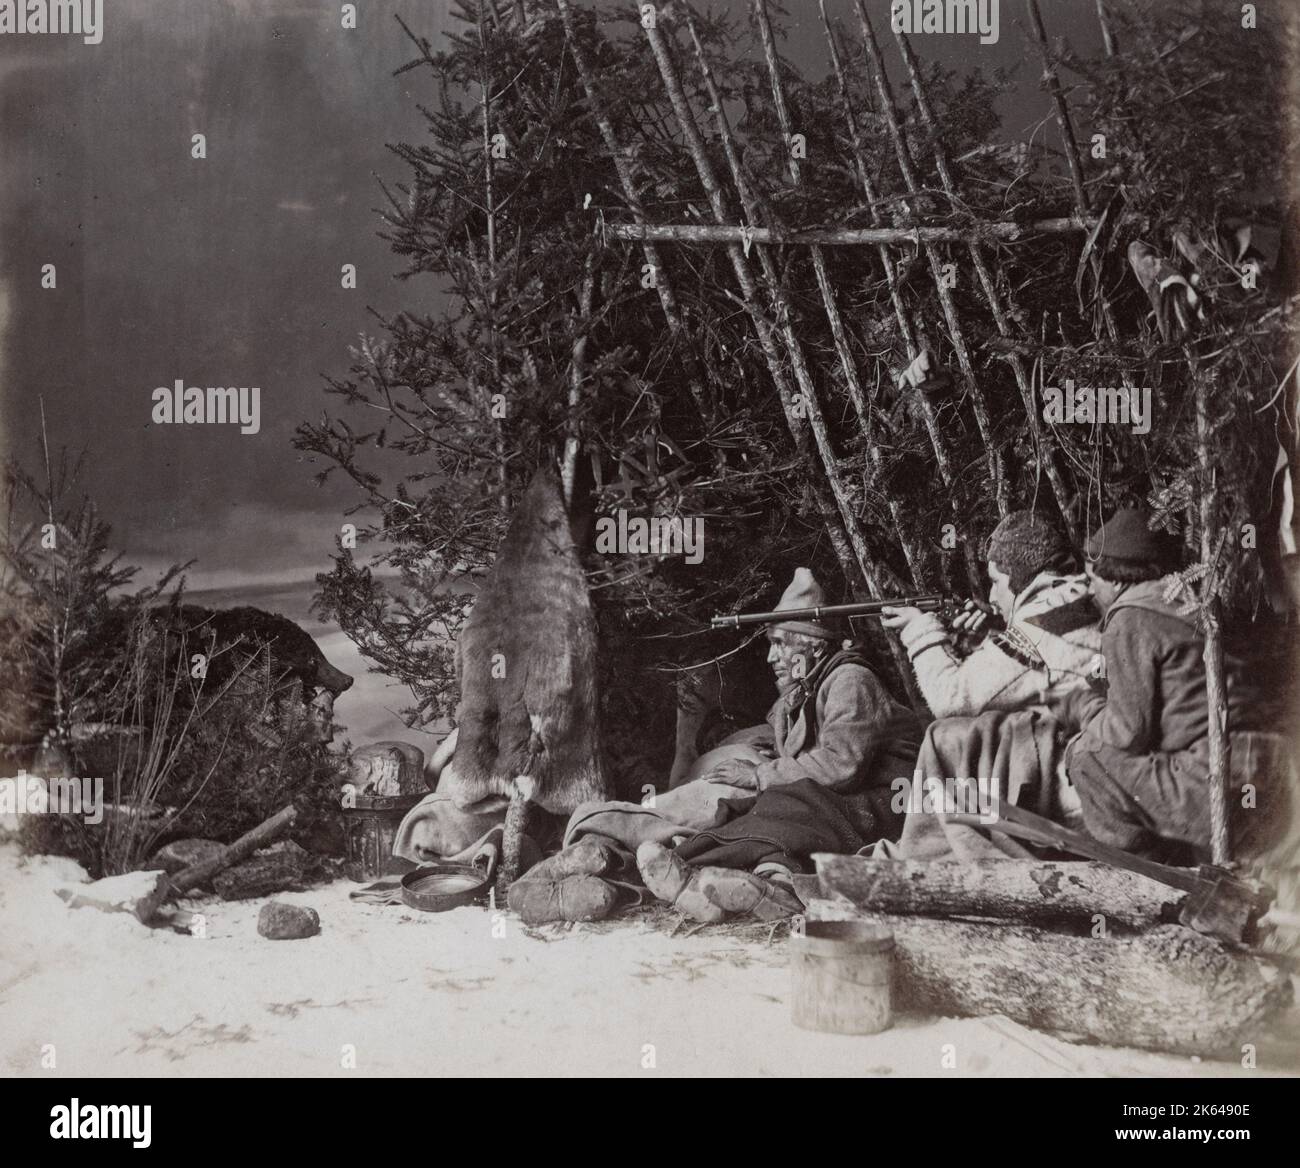 Photographie vintage du XIXe siècle - chasseurs avec des armes à feu en train de tirer dans la neige, composition en studio de William Notman, Canada, vers 1880. Banque D'Images